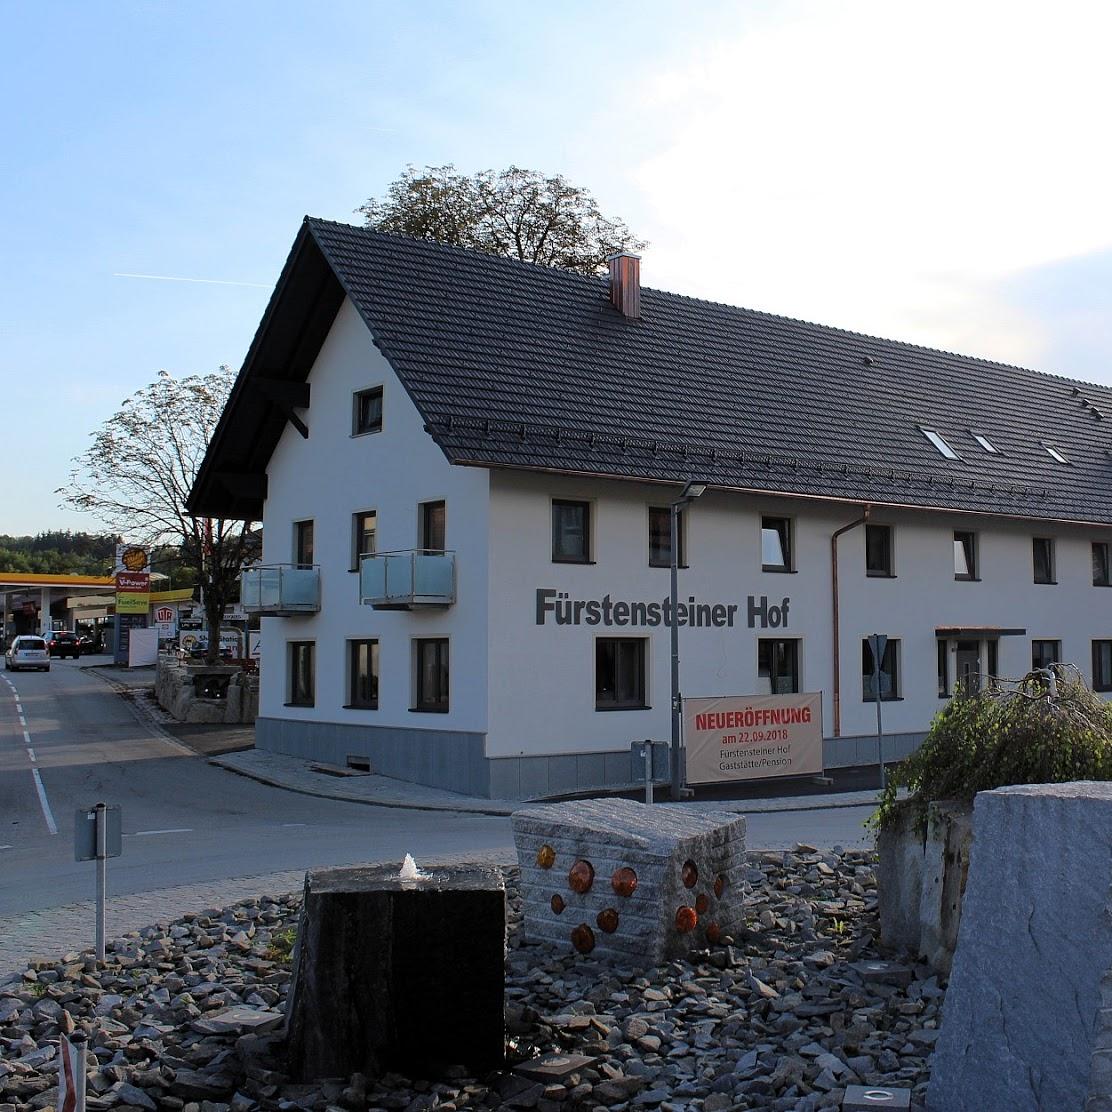 Restaurant "er Hof" in  Fürstenstein